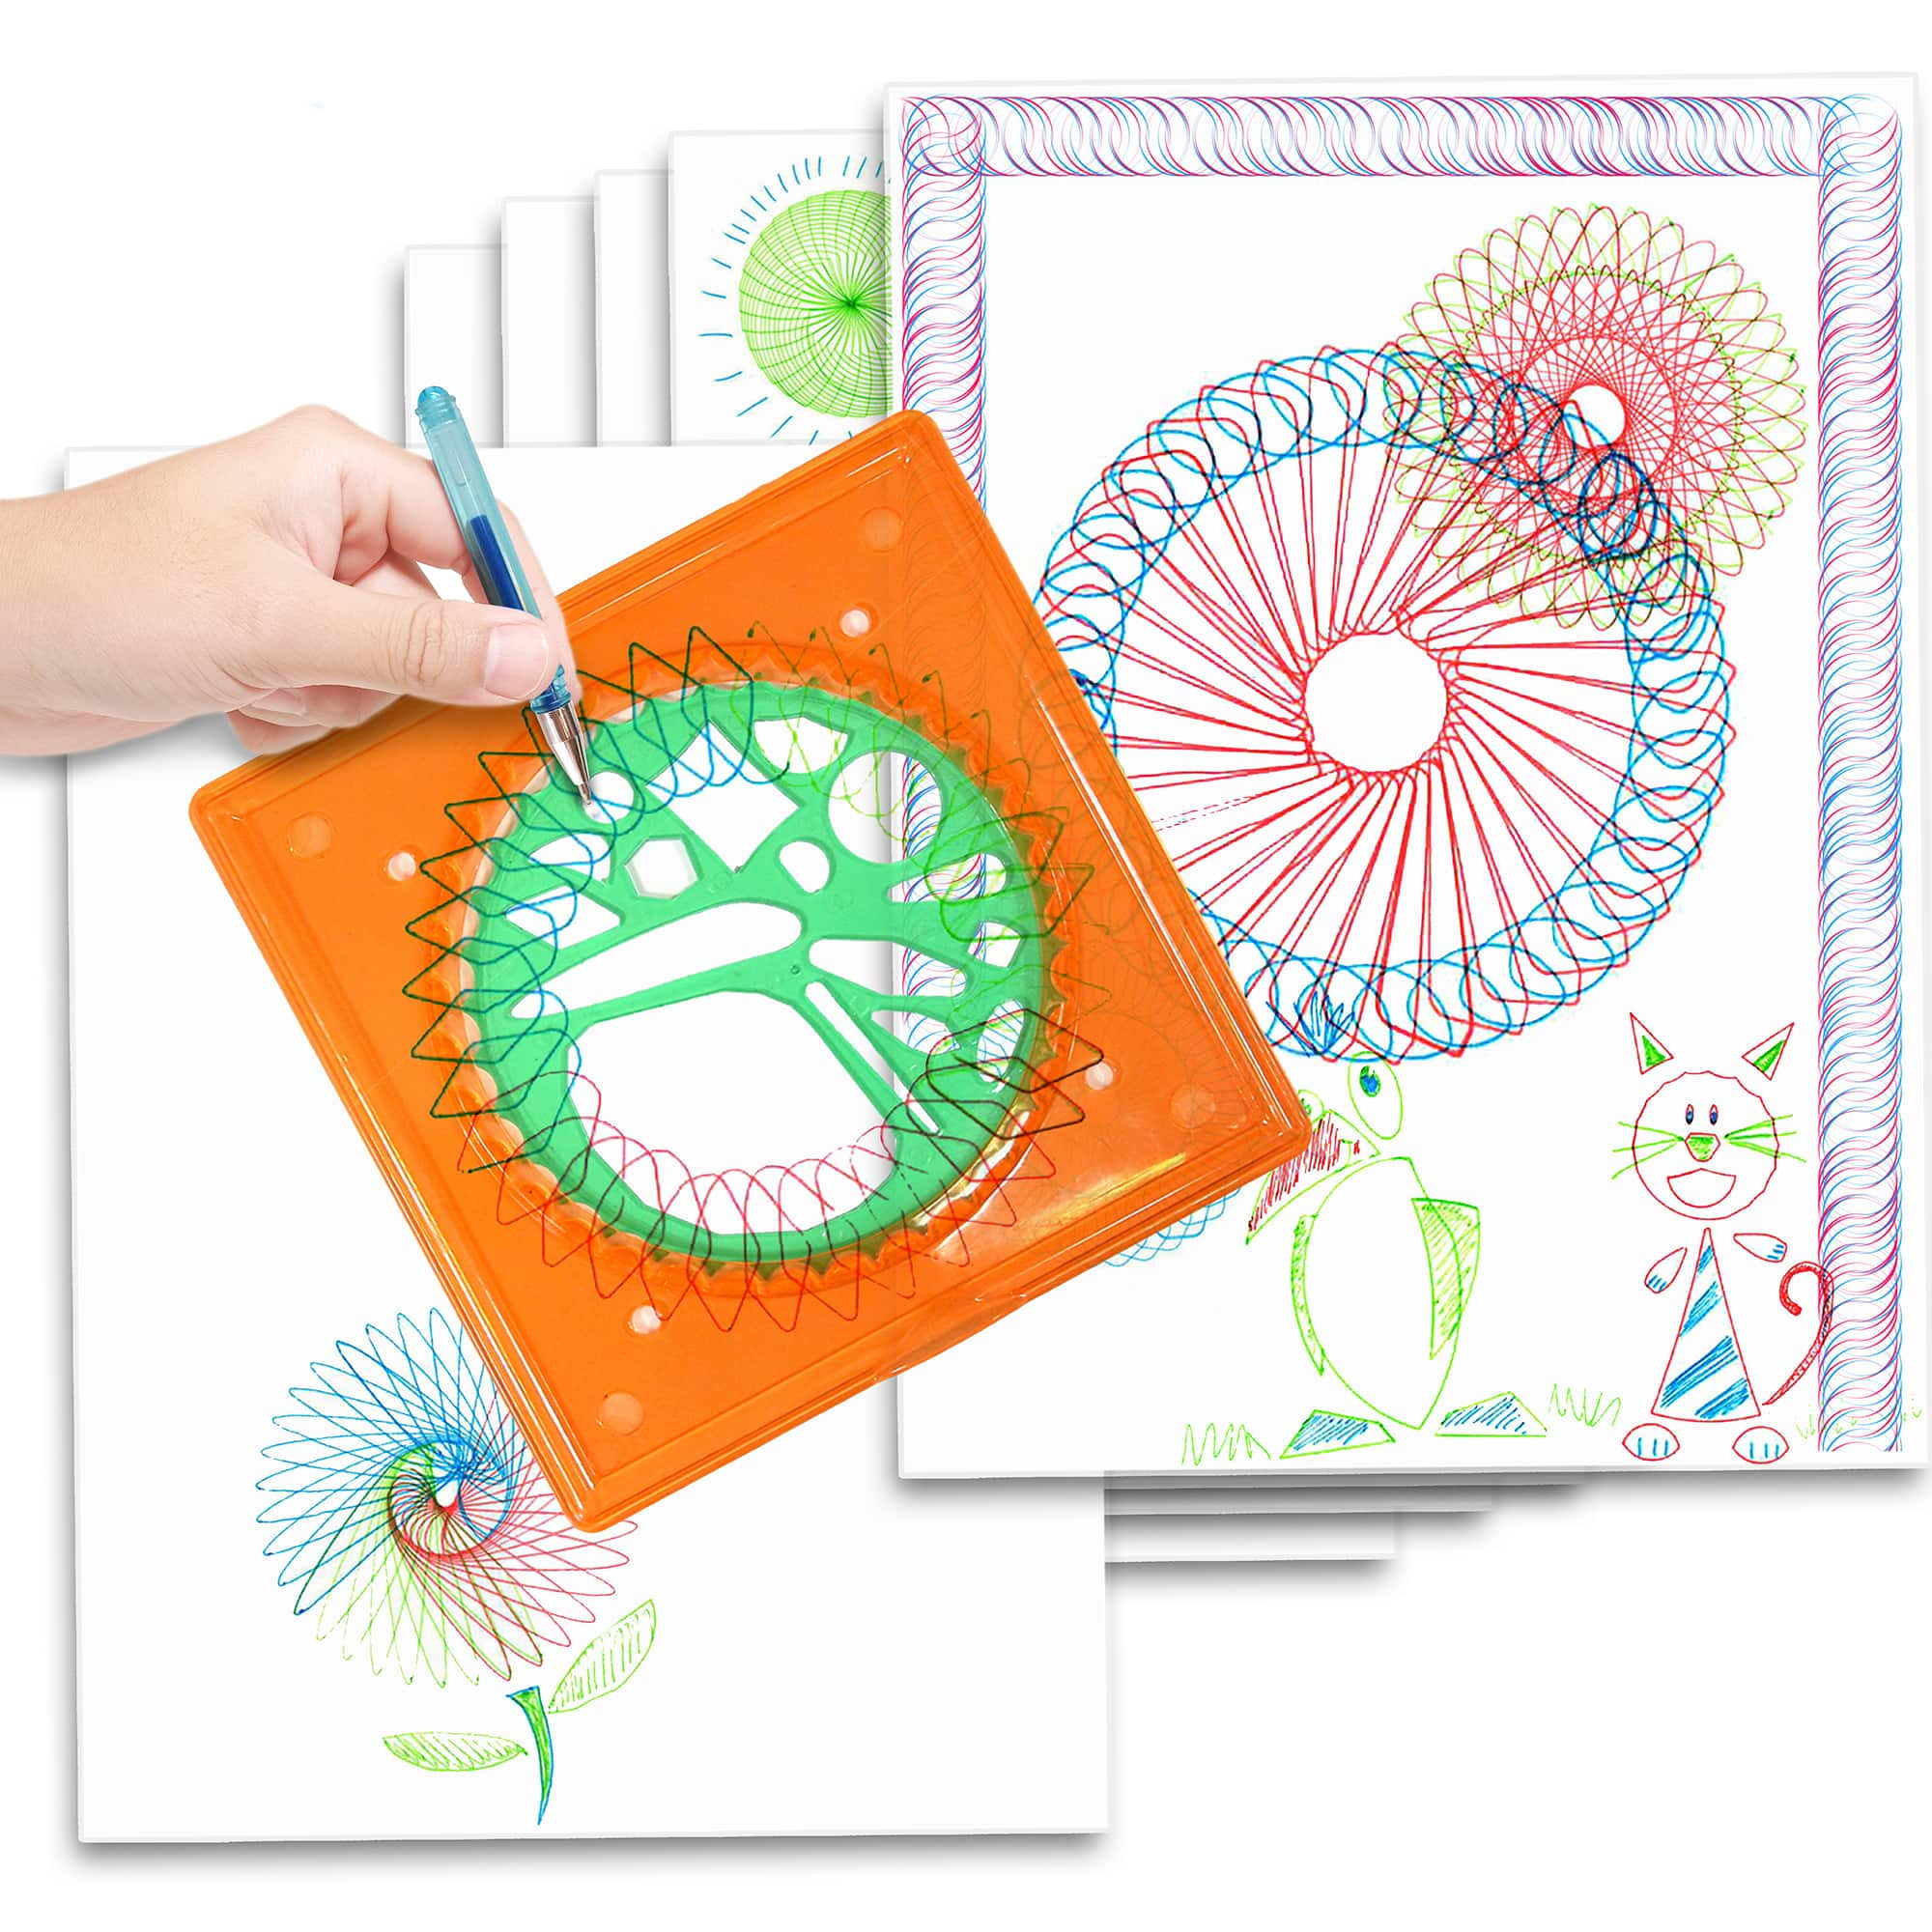 Kids Art Ideas: Spiral Art Garden Collage